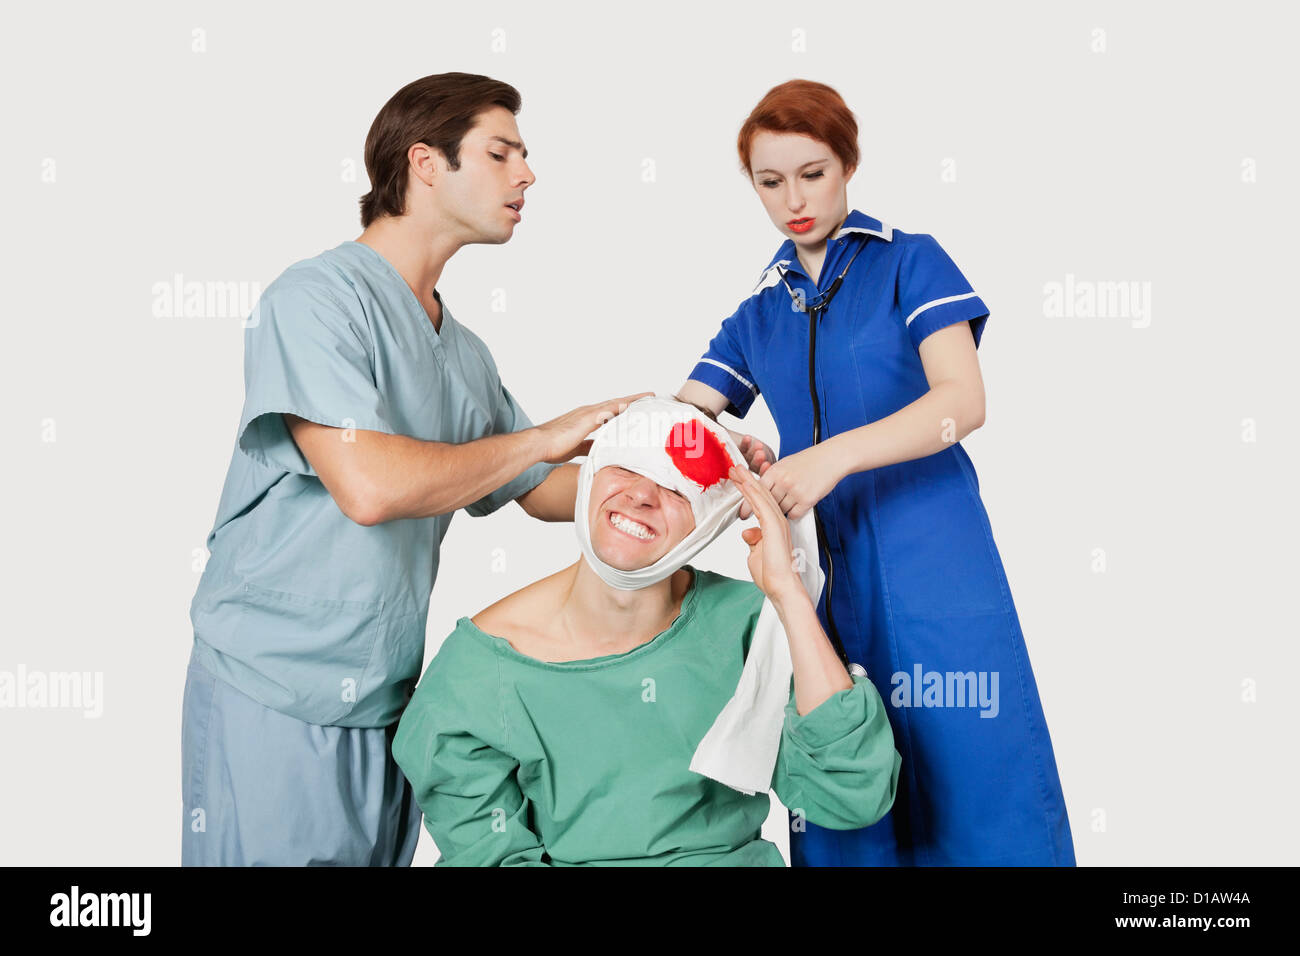 Männlichen Arzt Krankenschwester Baging einen verletzten Patienten Stockfoto